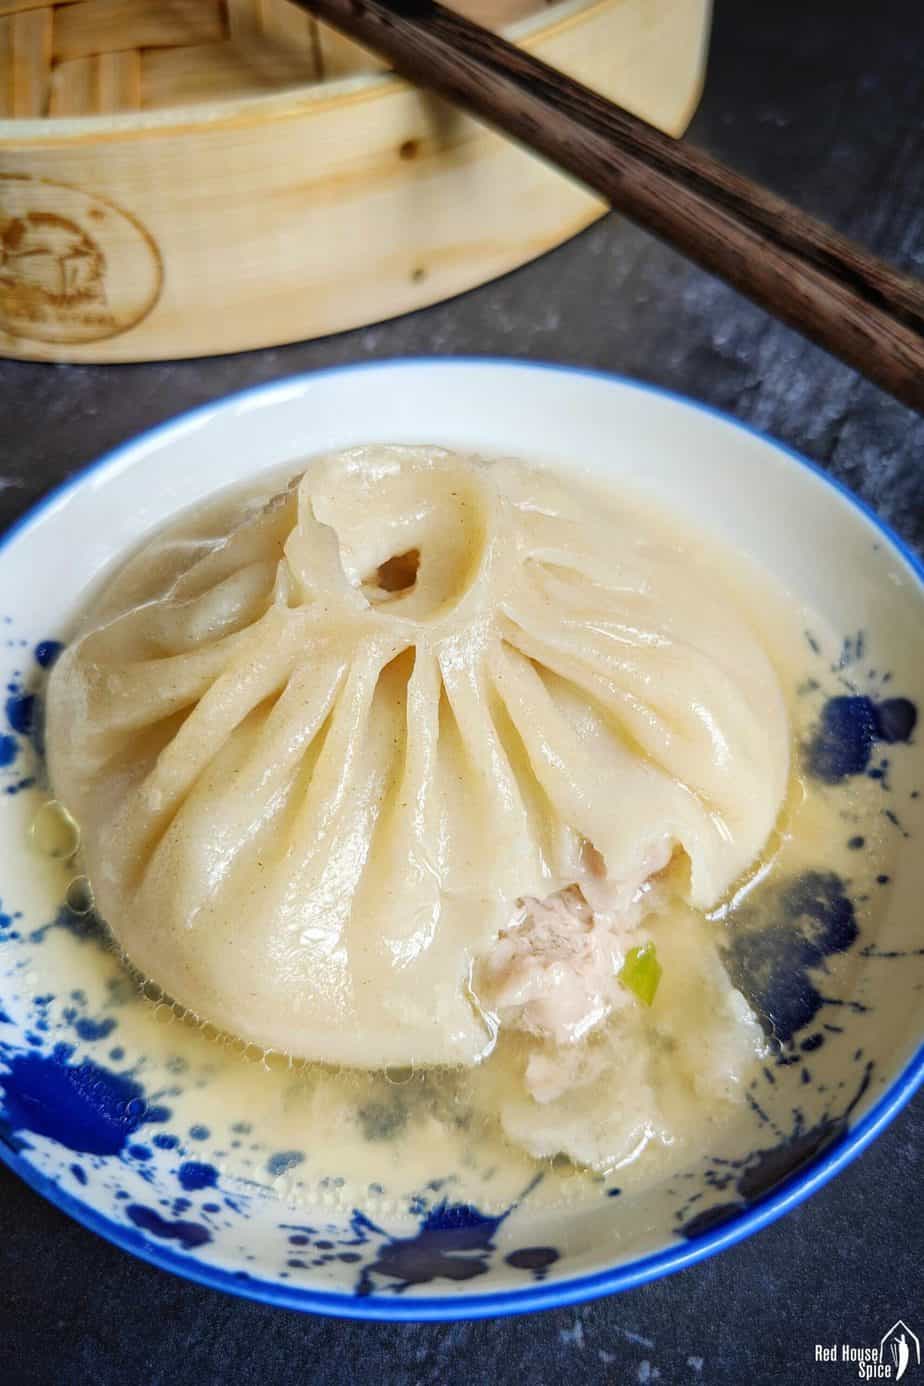 A soup dumpling showing the filling